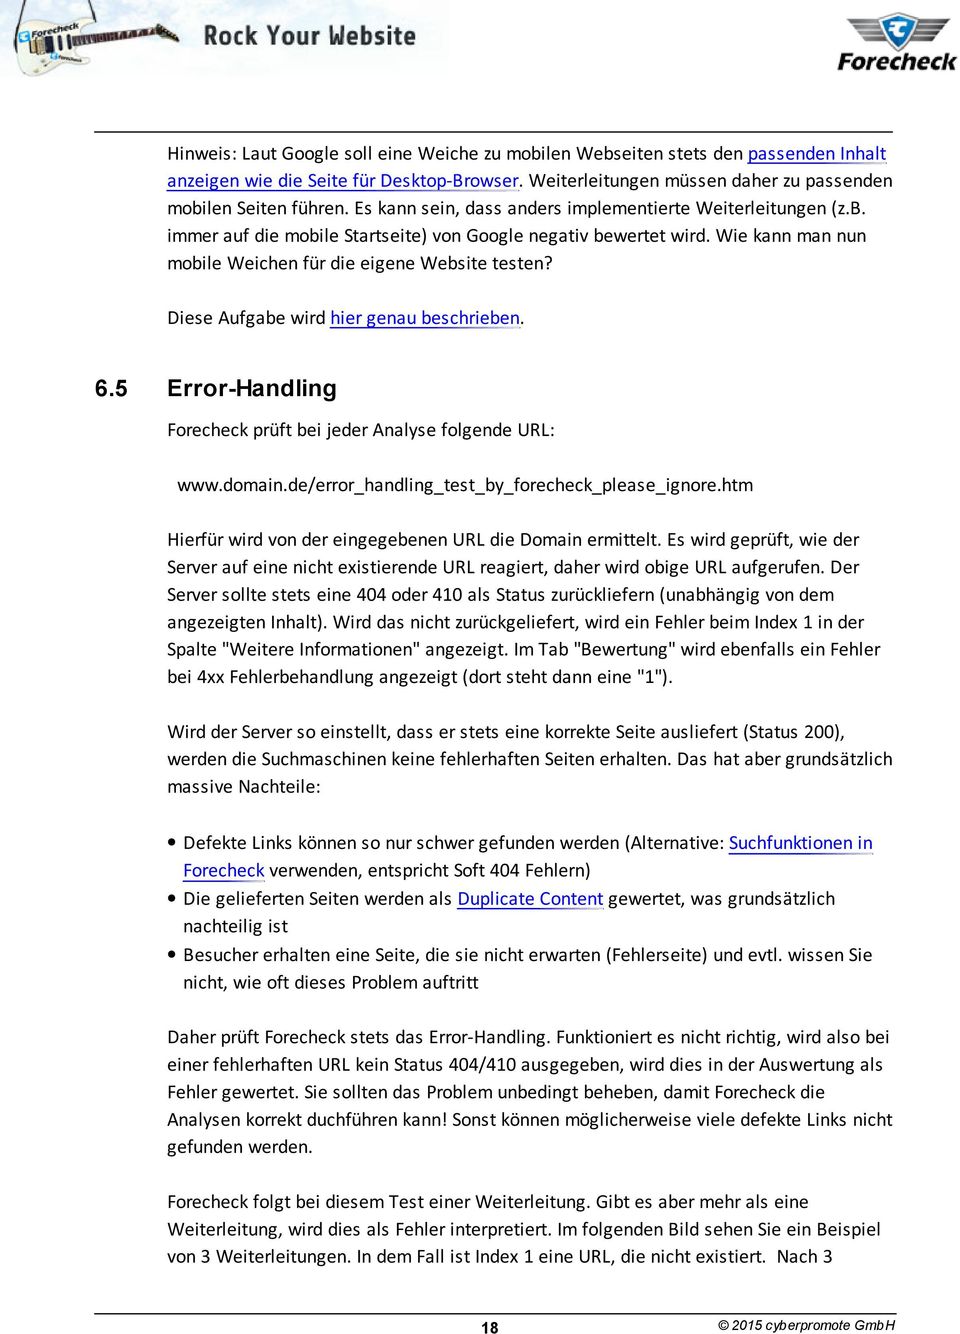 Diese Aufgabe wird hier genau beschrieben. 6.5 Error-Handling Forecheck prüft bei jeder Analyse folgende URL: www.domain.de/error_handling_test_by_forecheck_please_ignore.